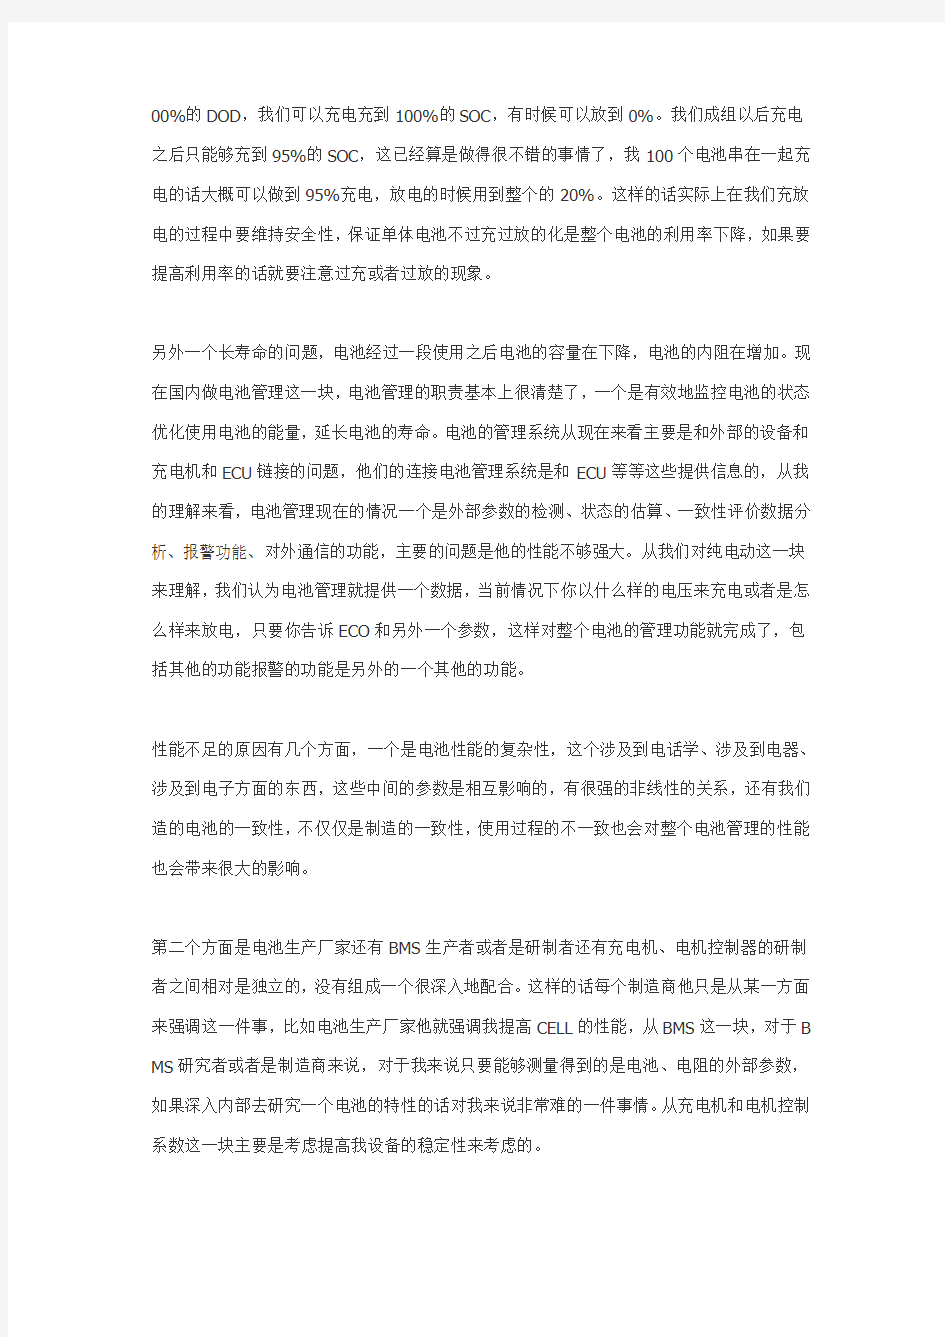 北京交通大学电气工程学院姜久春教授